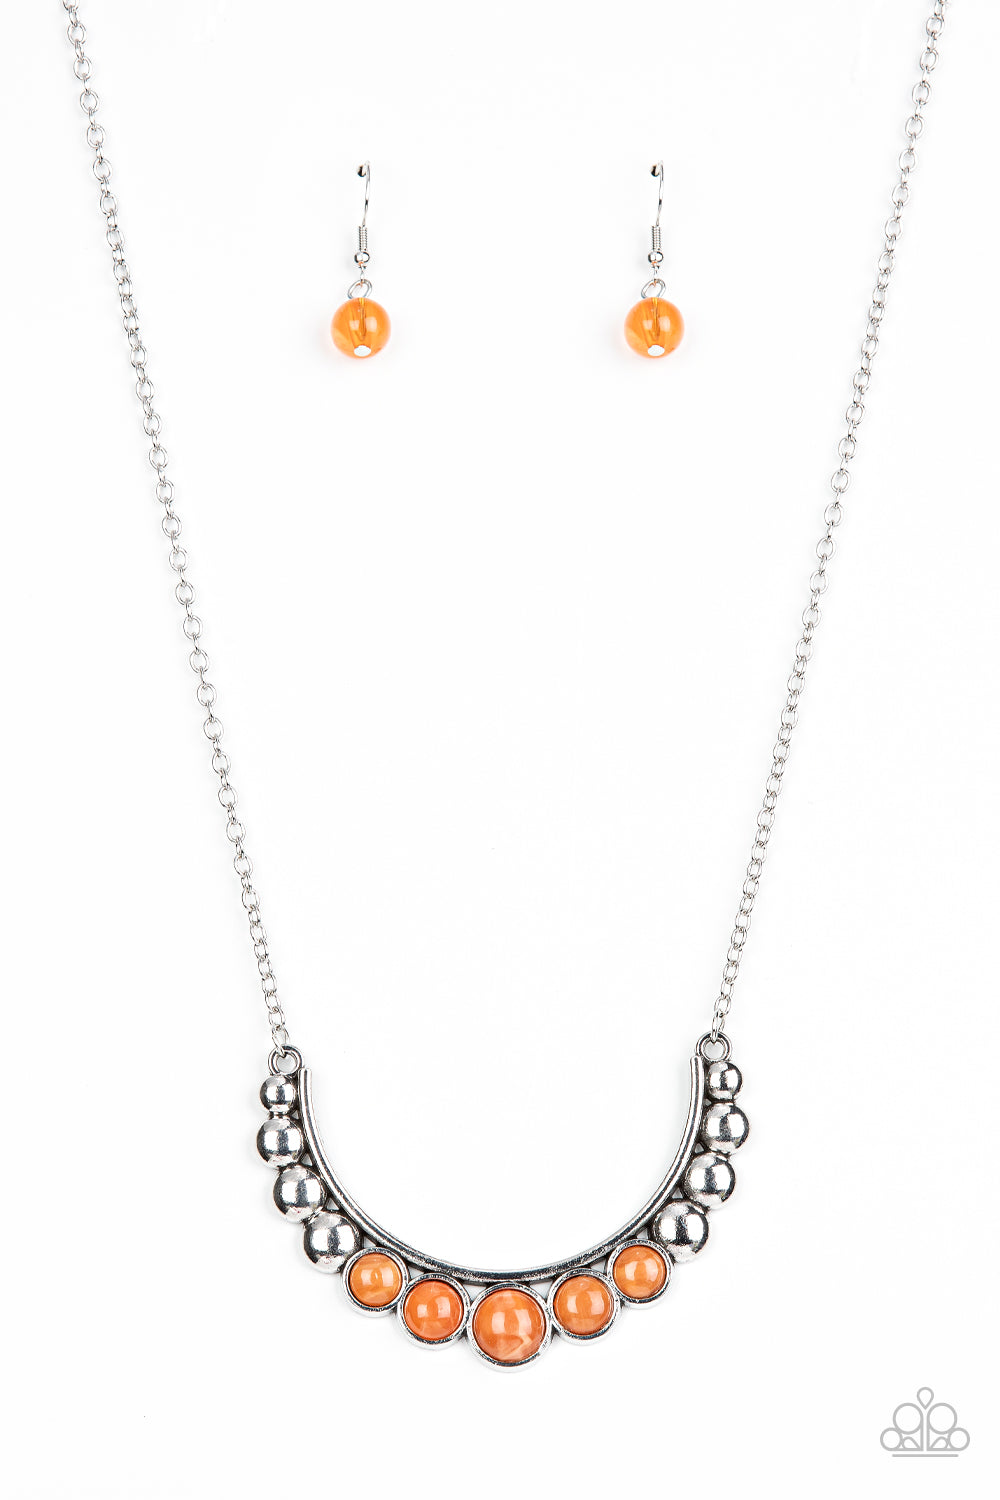 Horseshoe Bend - Orange necklace B074